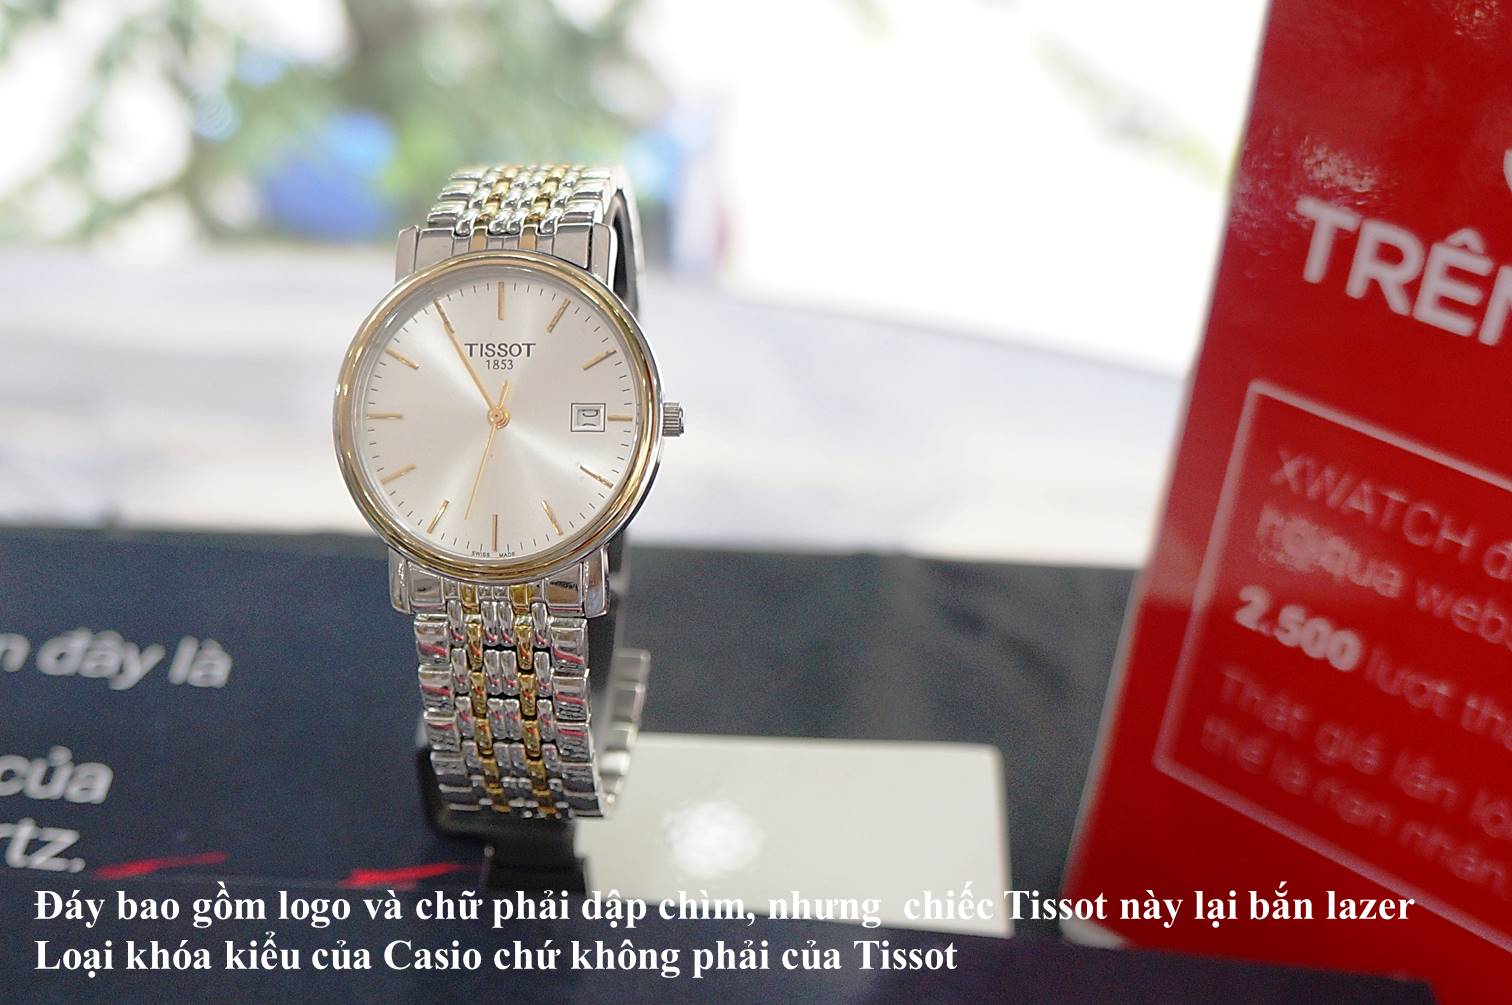 Chiếc Tissot này được là loại kiểu khóa của hãng đồng hồ khác, cho thấy đây là loại đồng hồ fake